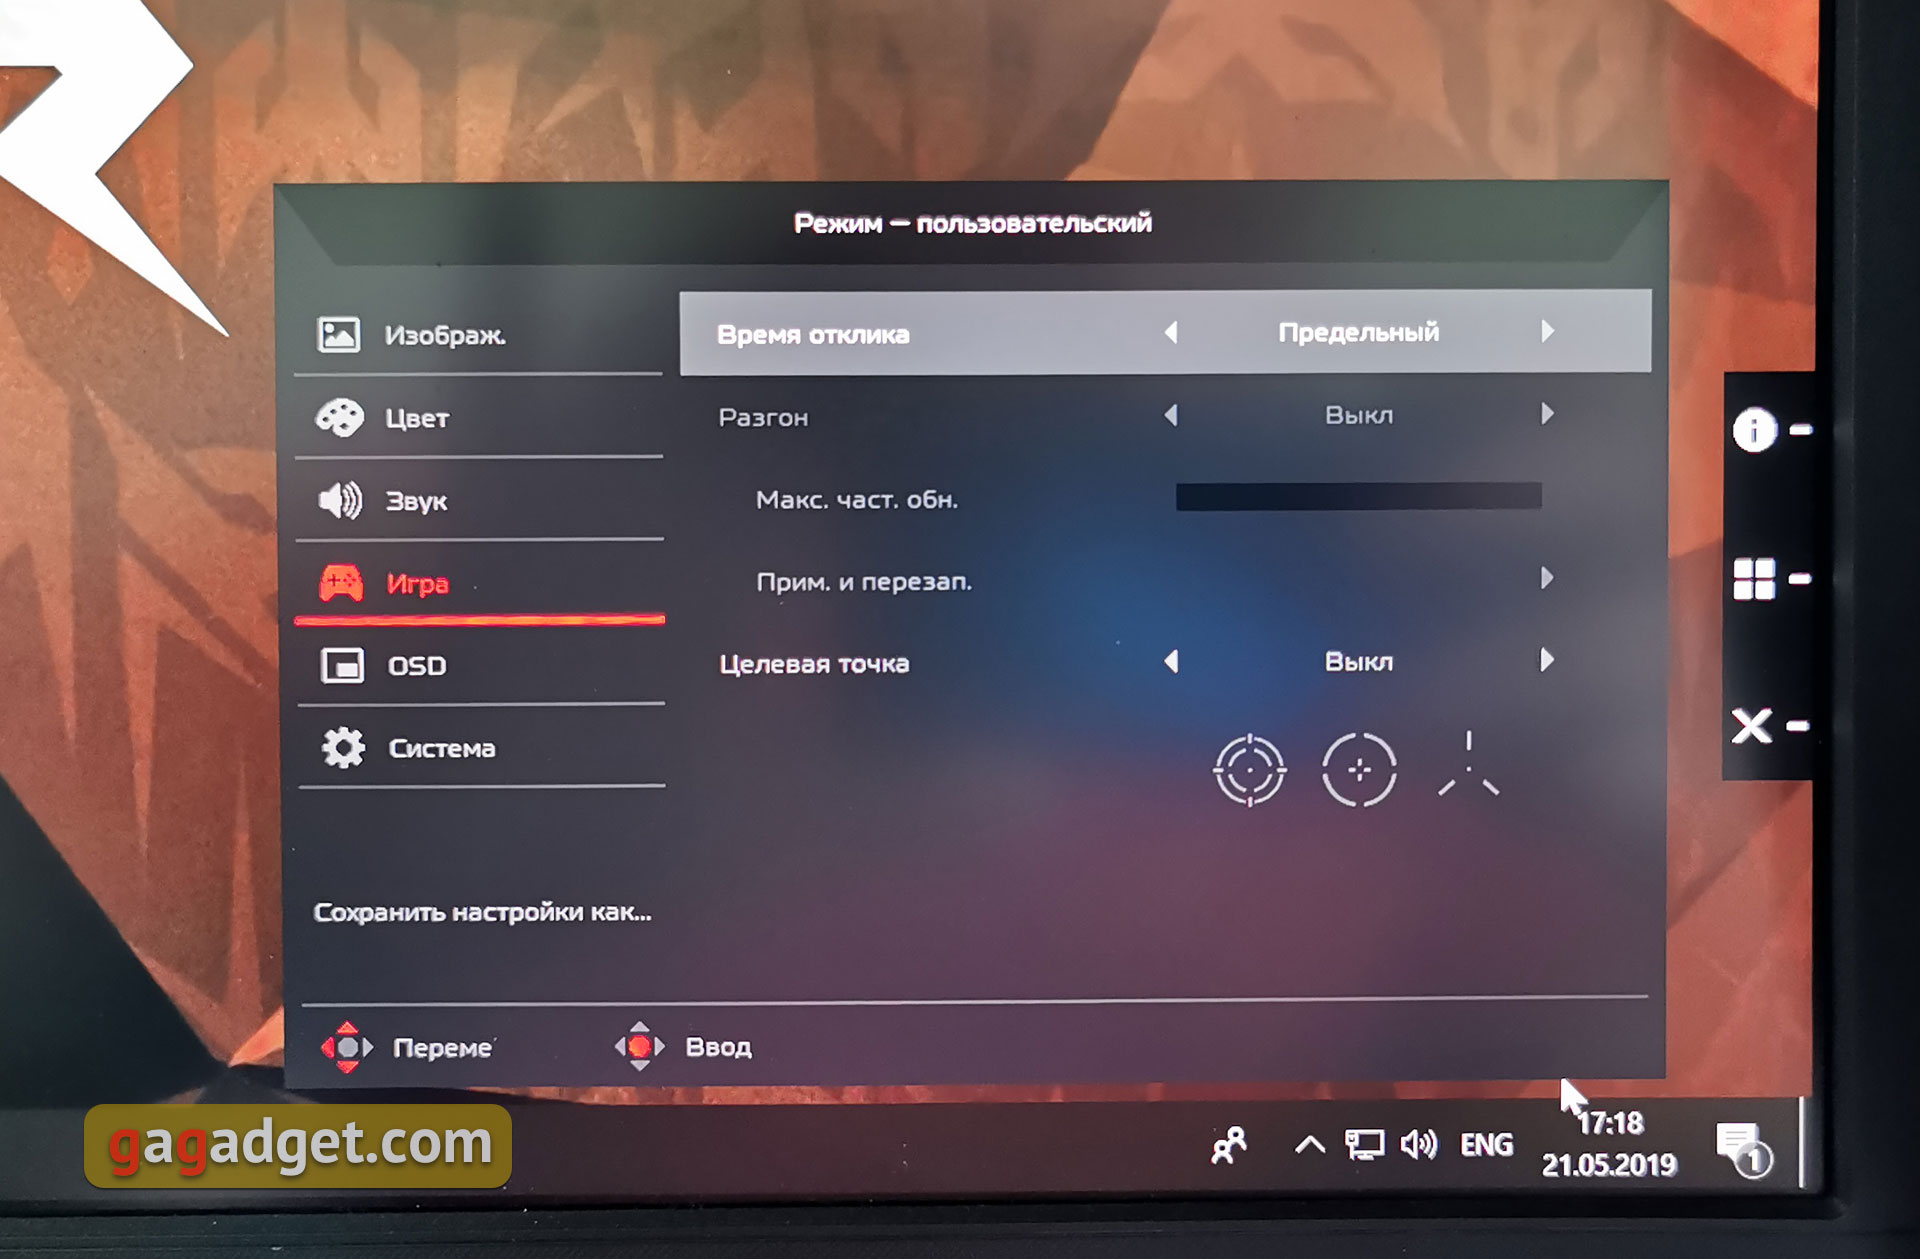 Recenzja Acer Predator X27: wymażony monitor do gier-44